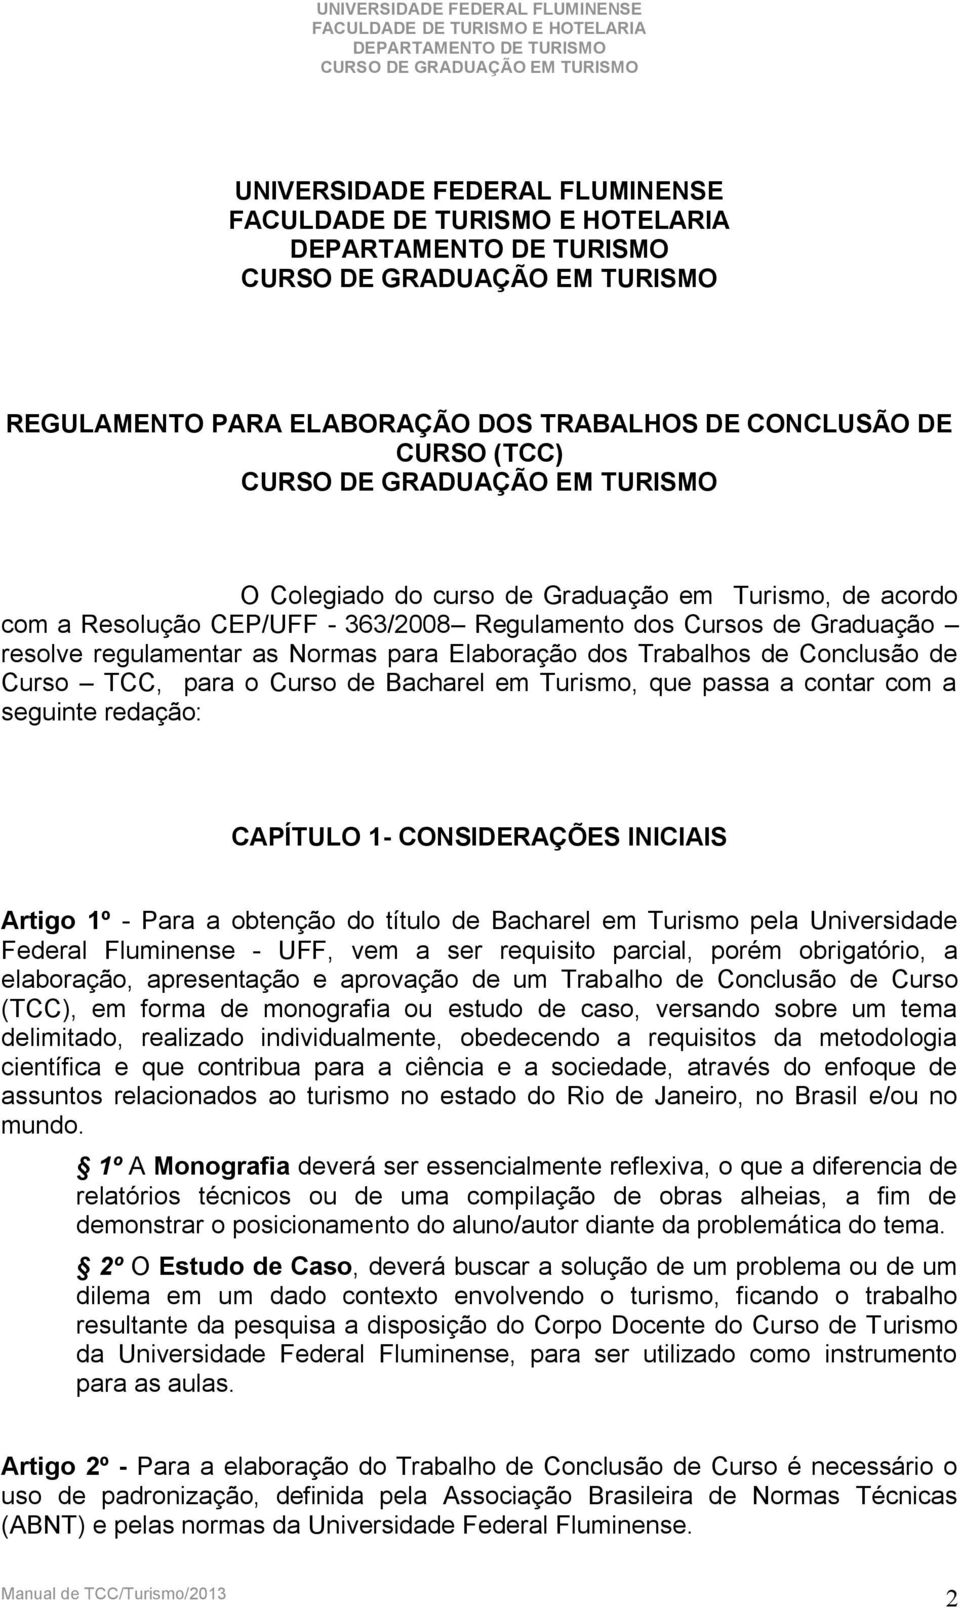 redação: CAPÍTULO 1- CONSIDERAÇÕES INICIAIS Artigo 1º - Para a obtenção do título de Bacharel em Turismo pela Universidade Federal Fluminense - UFF, vem a ser requisito parcial, porém obrigatório, a